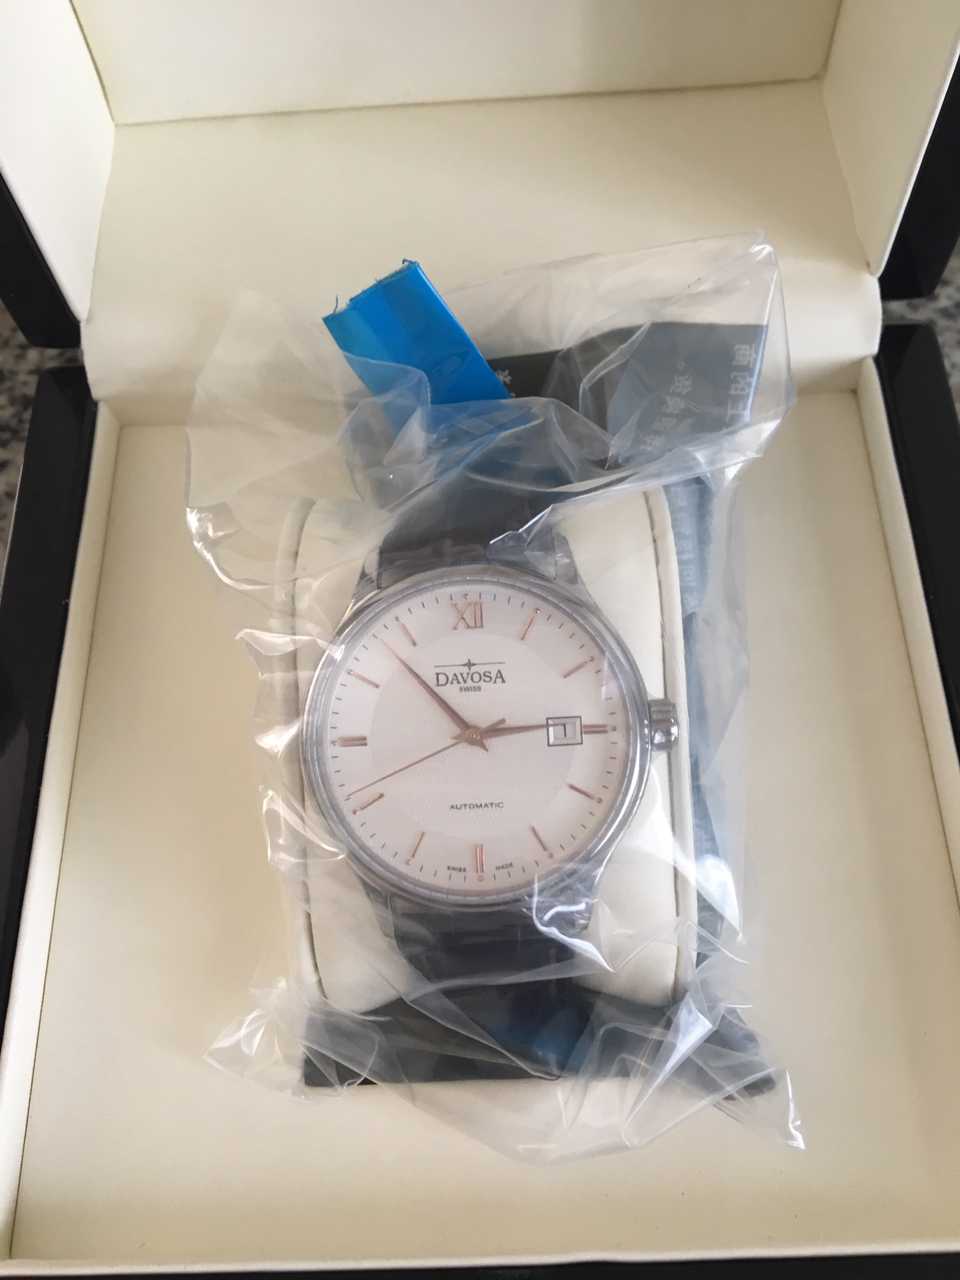 迪沃斯16145632手表【表友晒单作业】第一次买表...